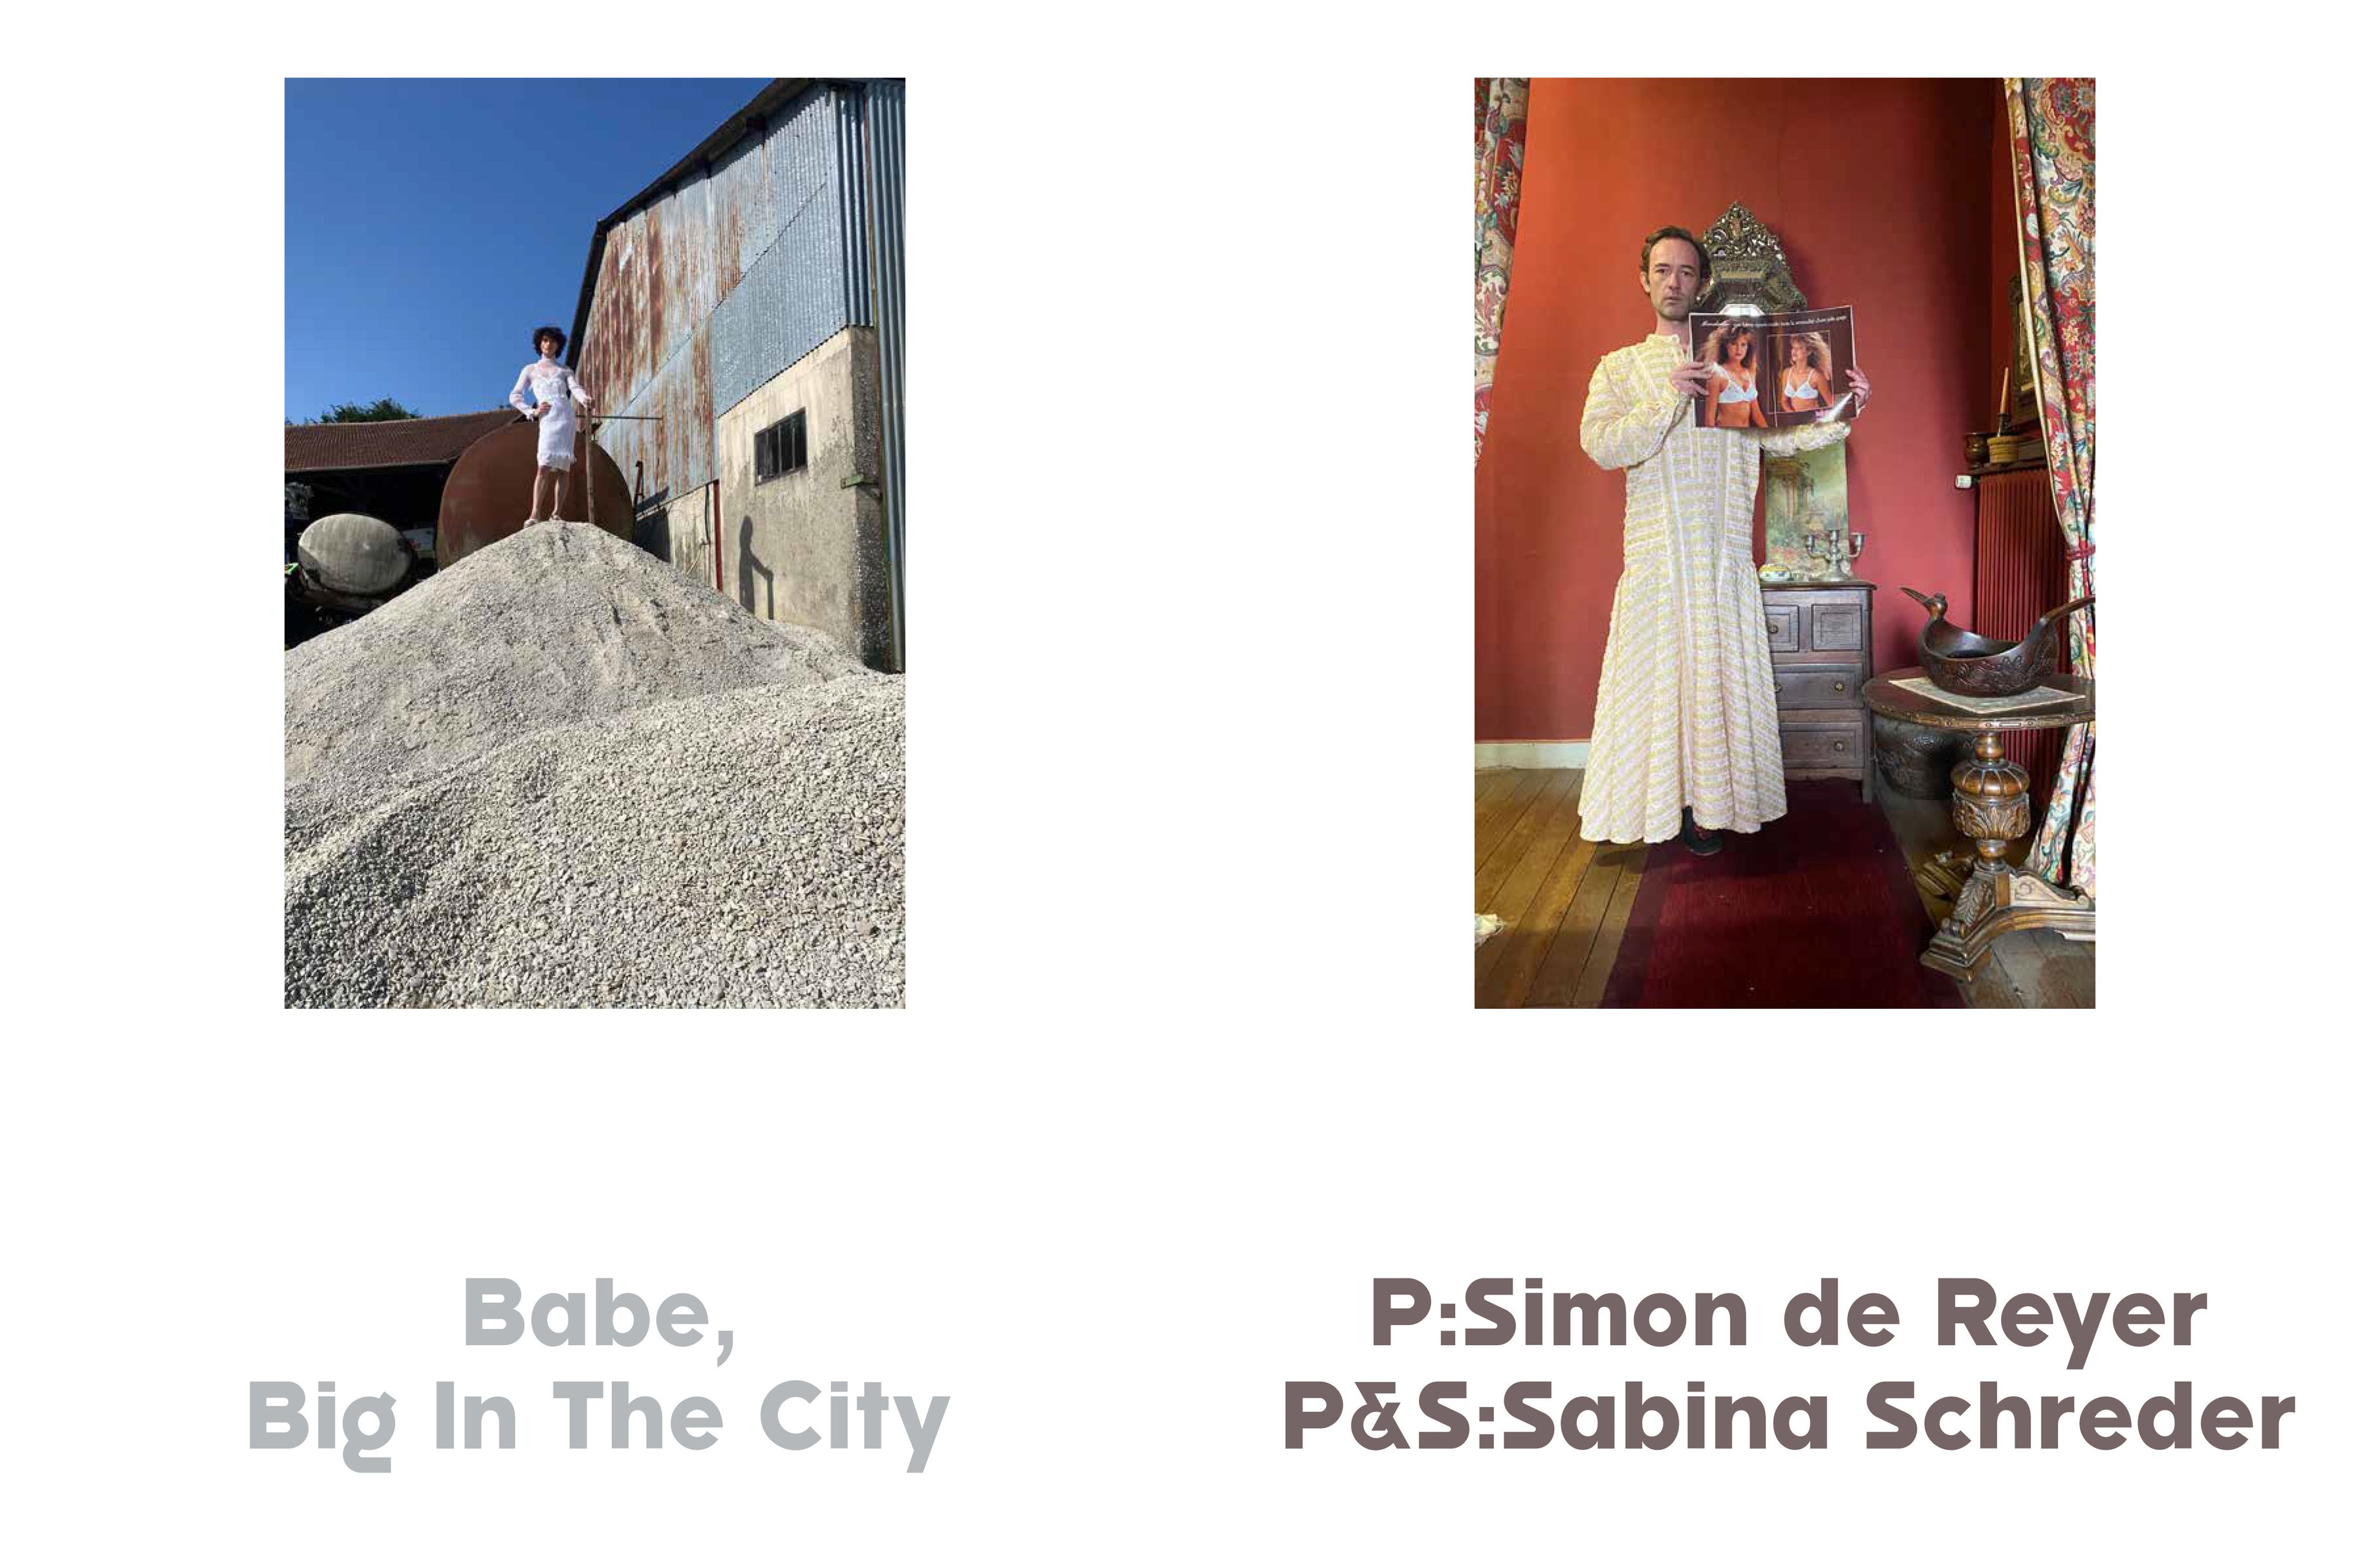 THE FACE - Sabina Schreder / Simon de Reyer styled by Sabina Schreder